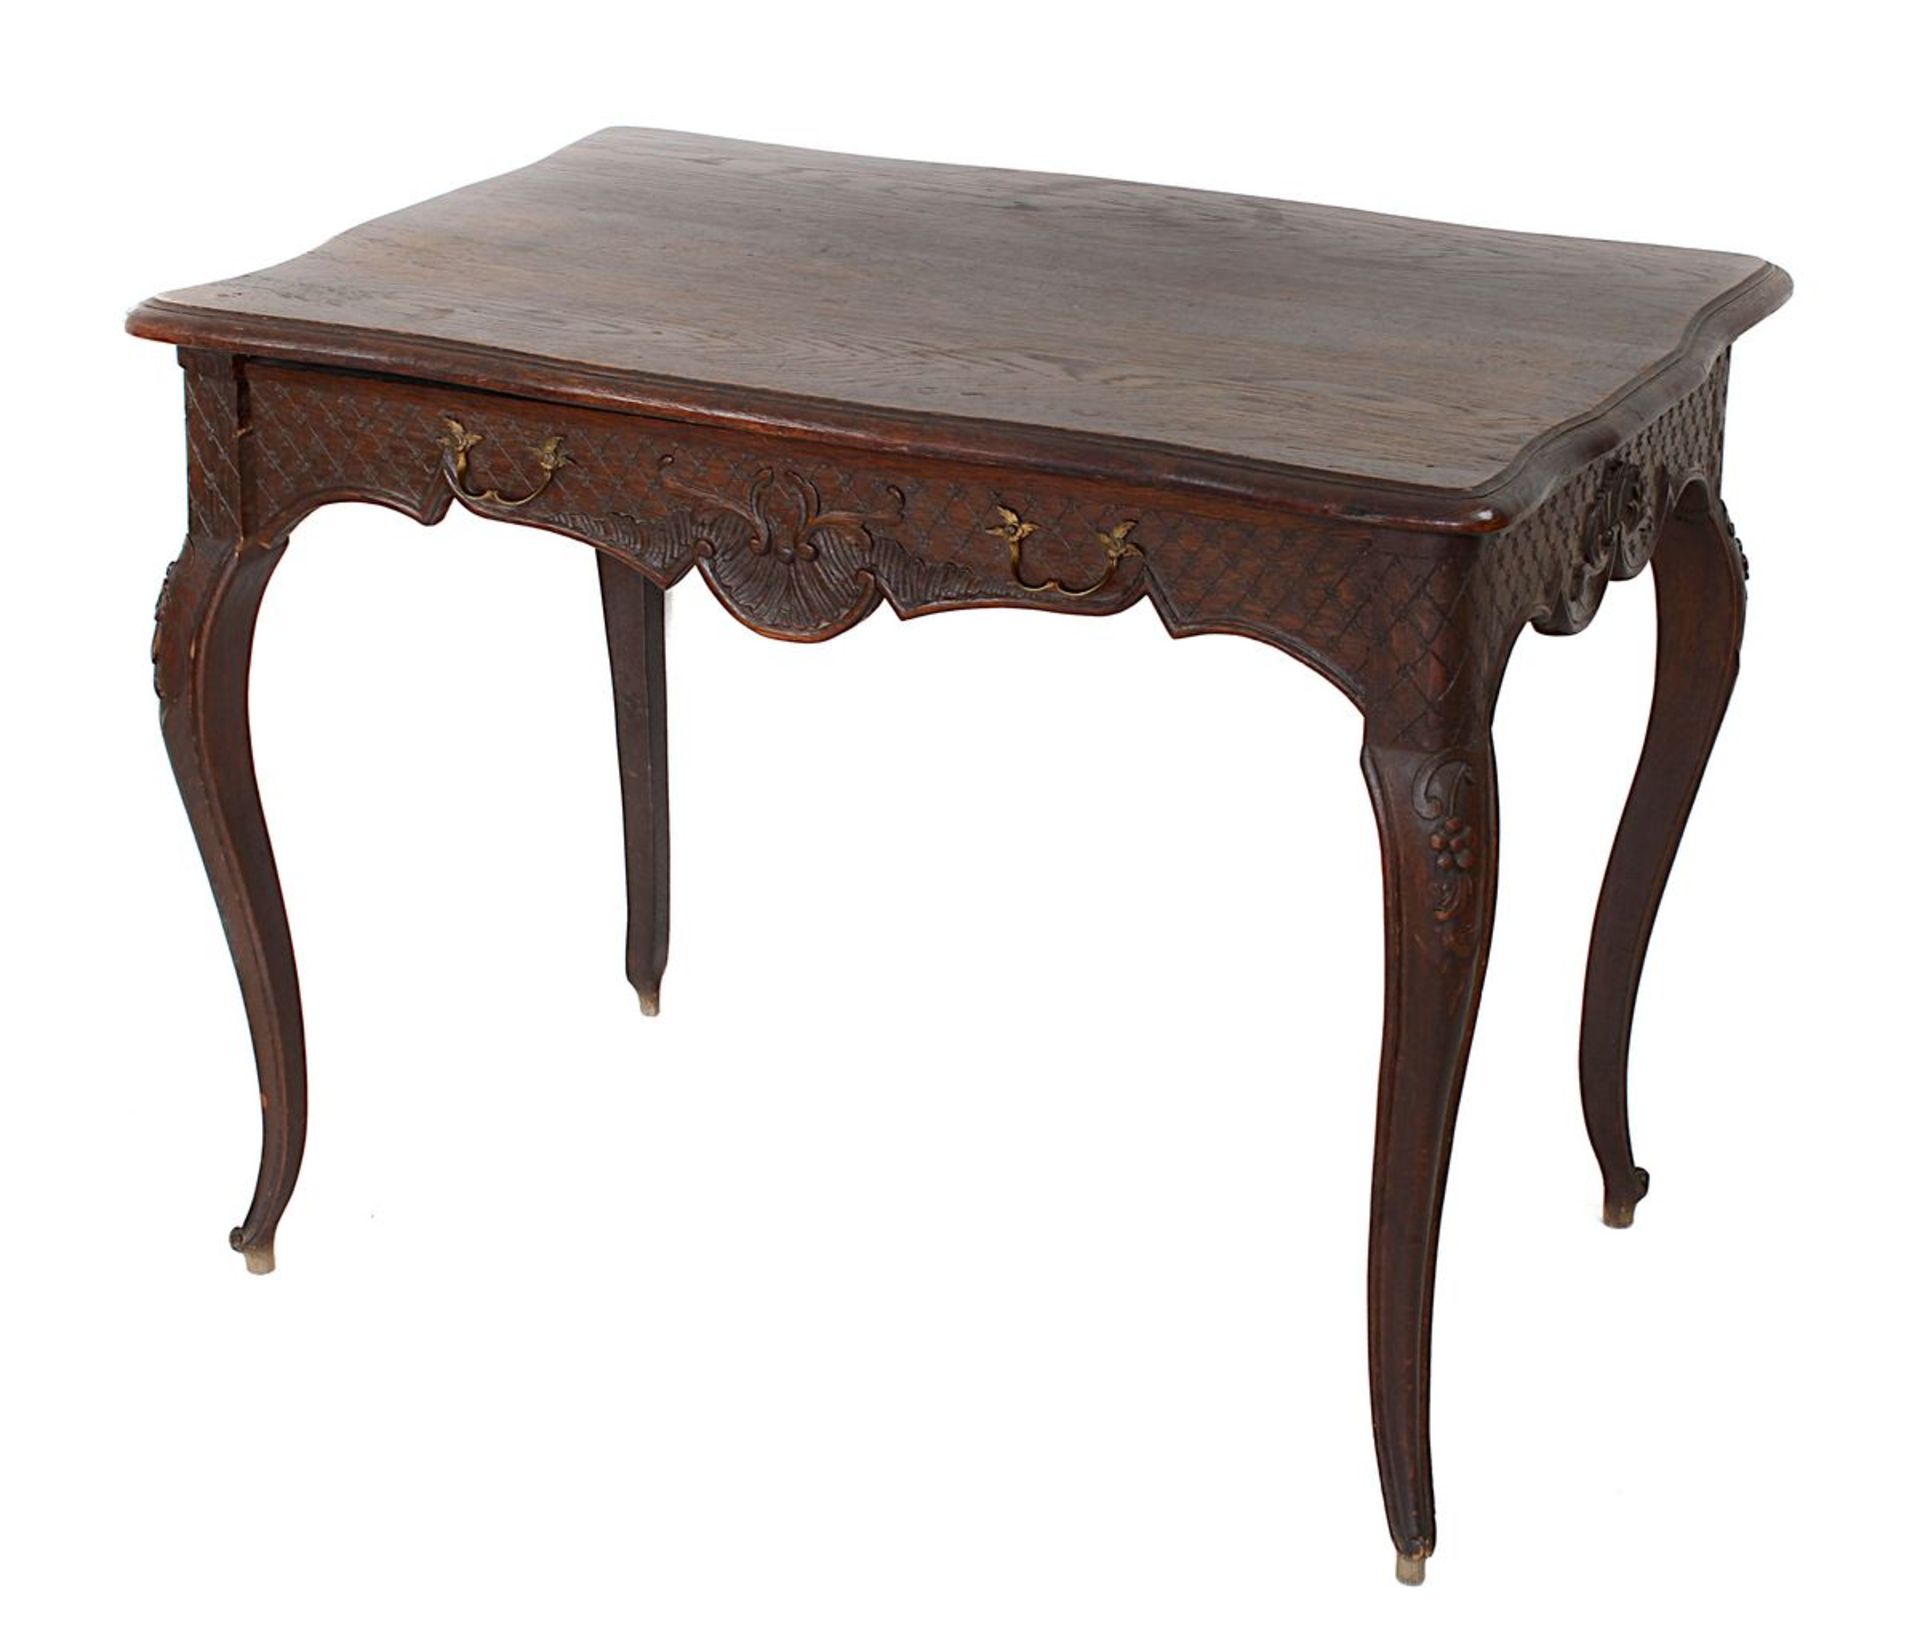 Kleiner Tisch, Frankreich 2. H. 19. Jh., Eiche massiv, dunkel gebeizt, im Barockstil, reich